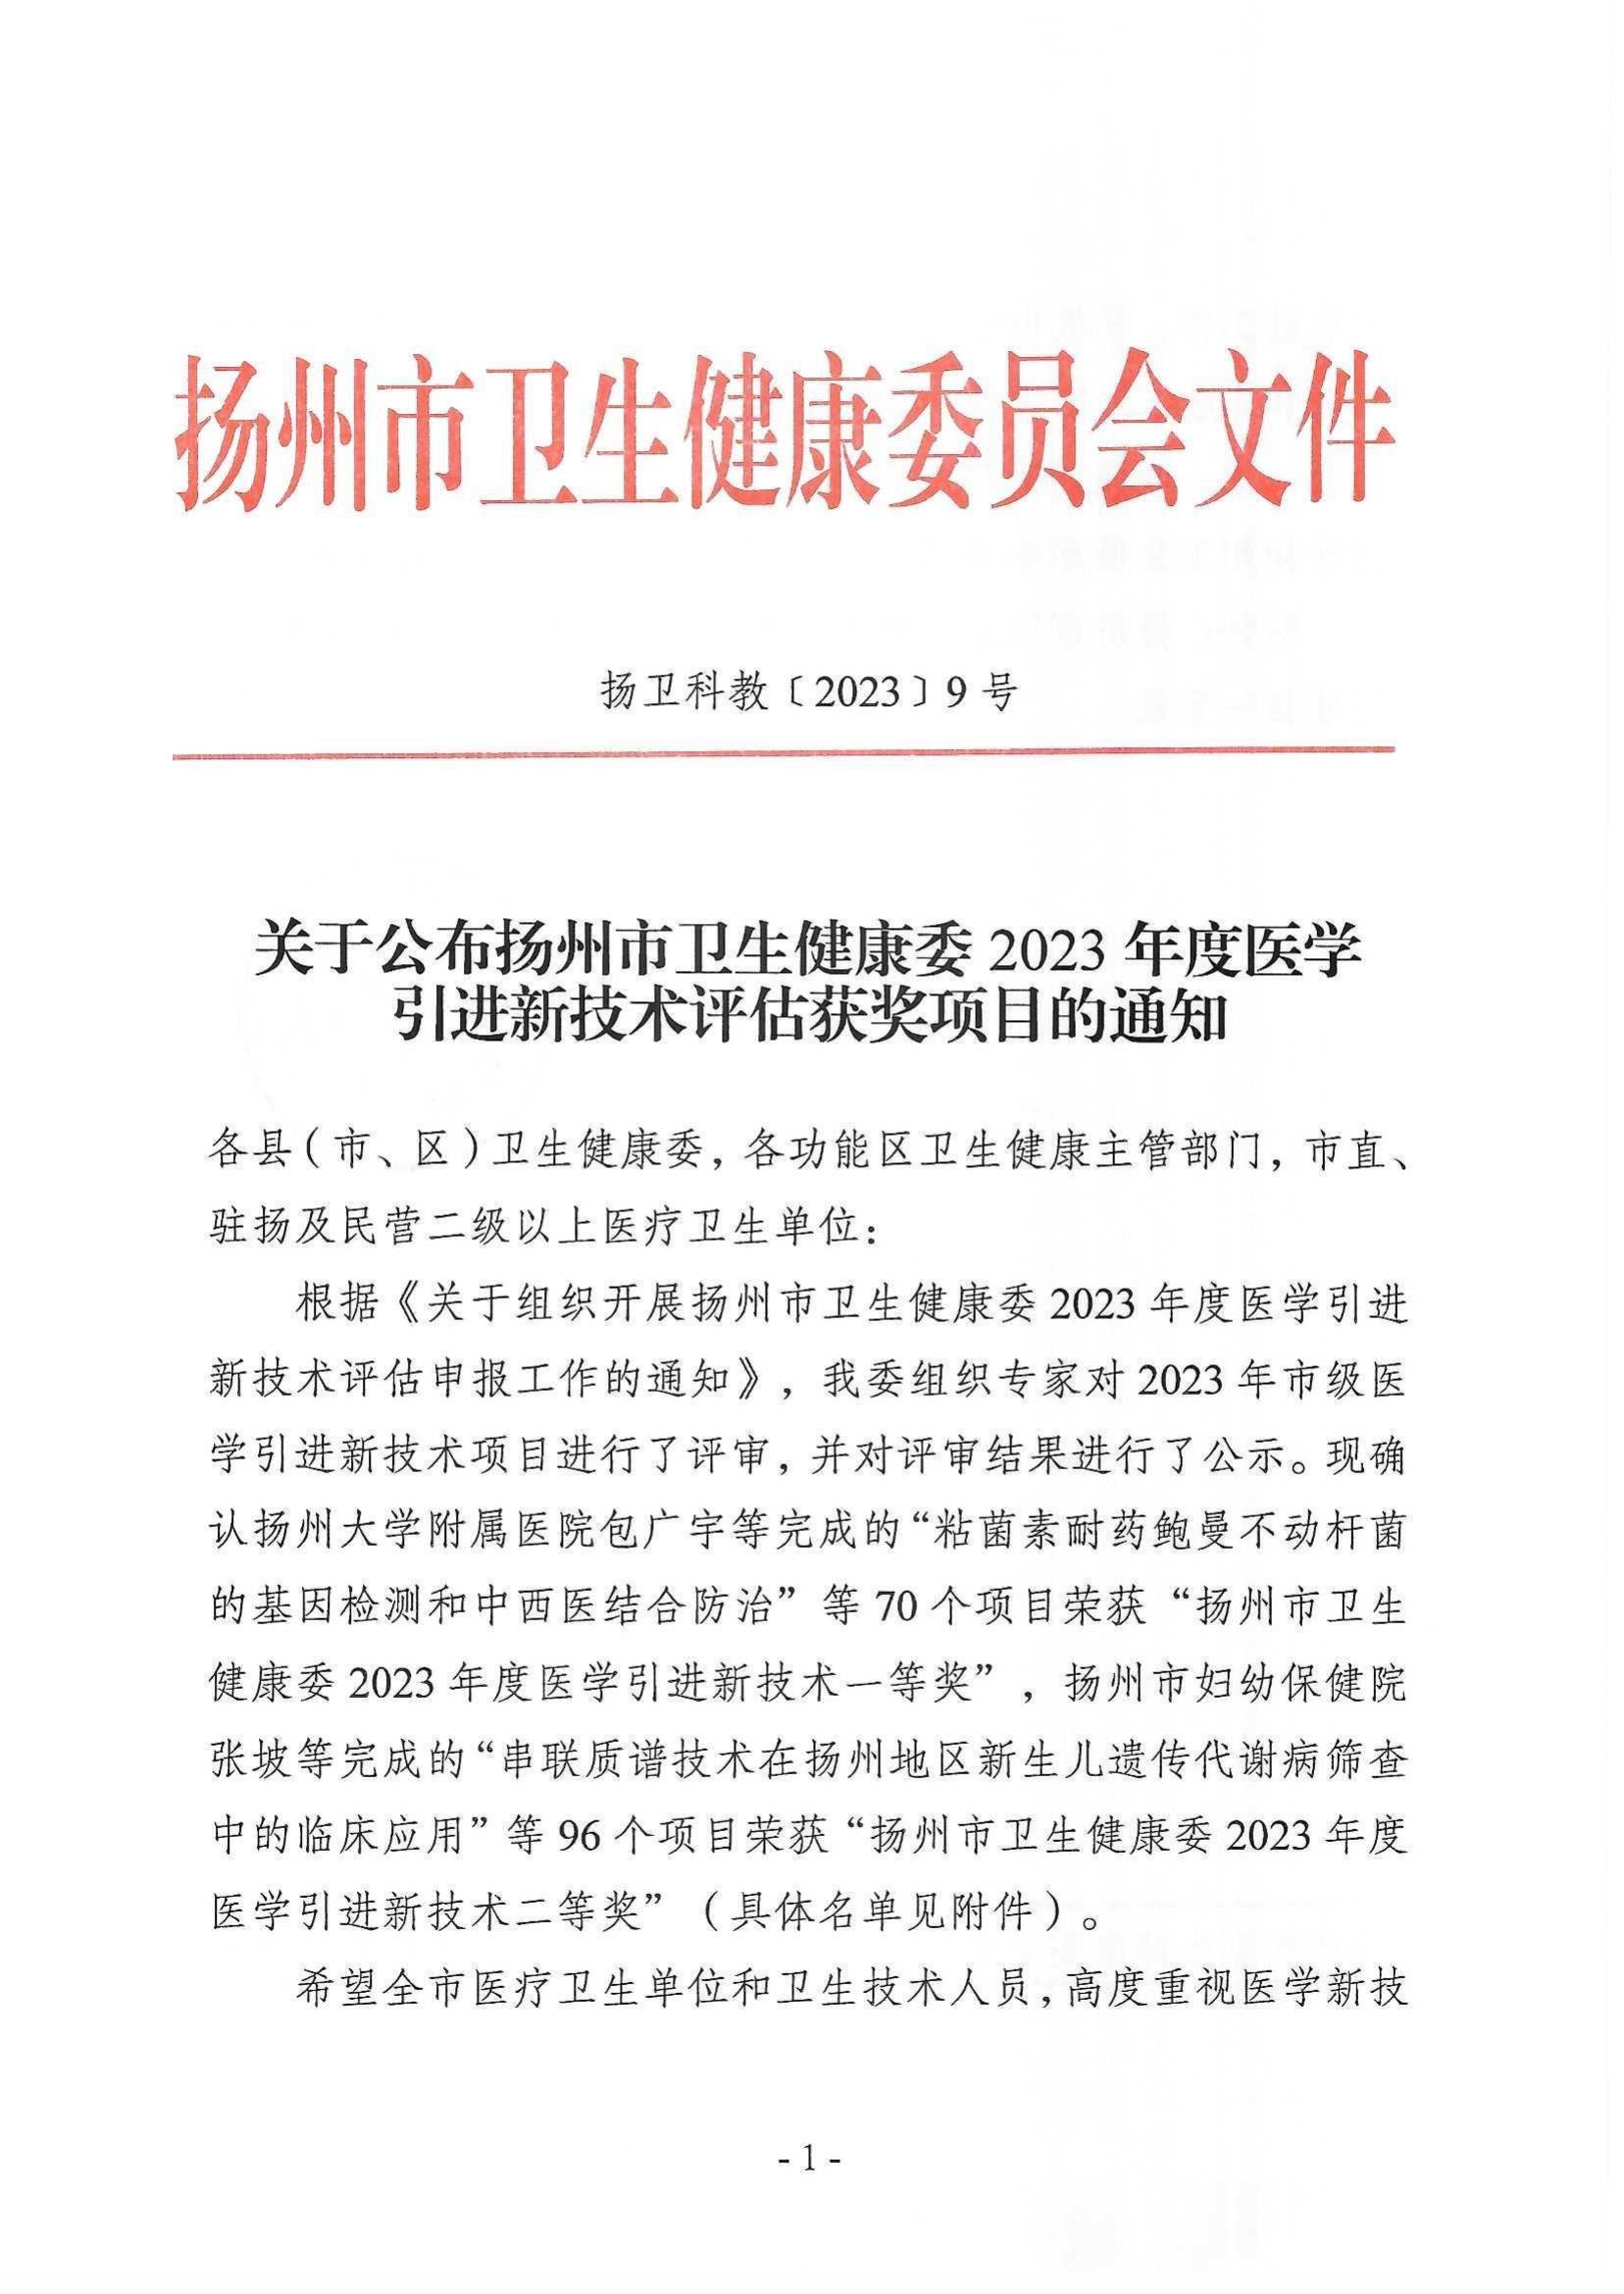 关于公布扬州市卫生健康委2023年度医学引进新技术评估获奖项目的通知_00.jpg